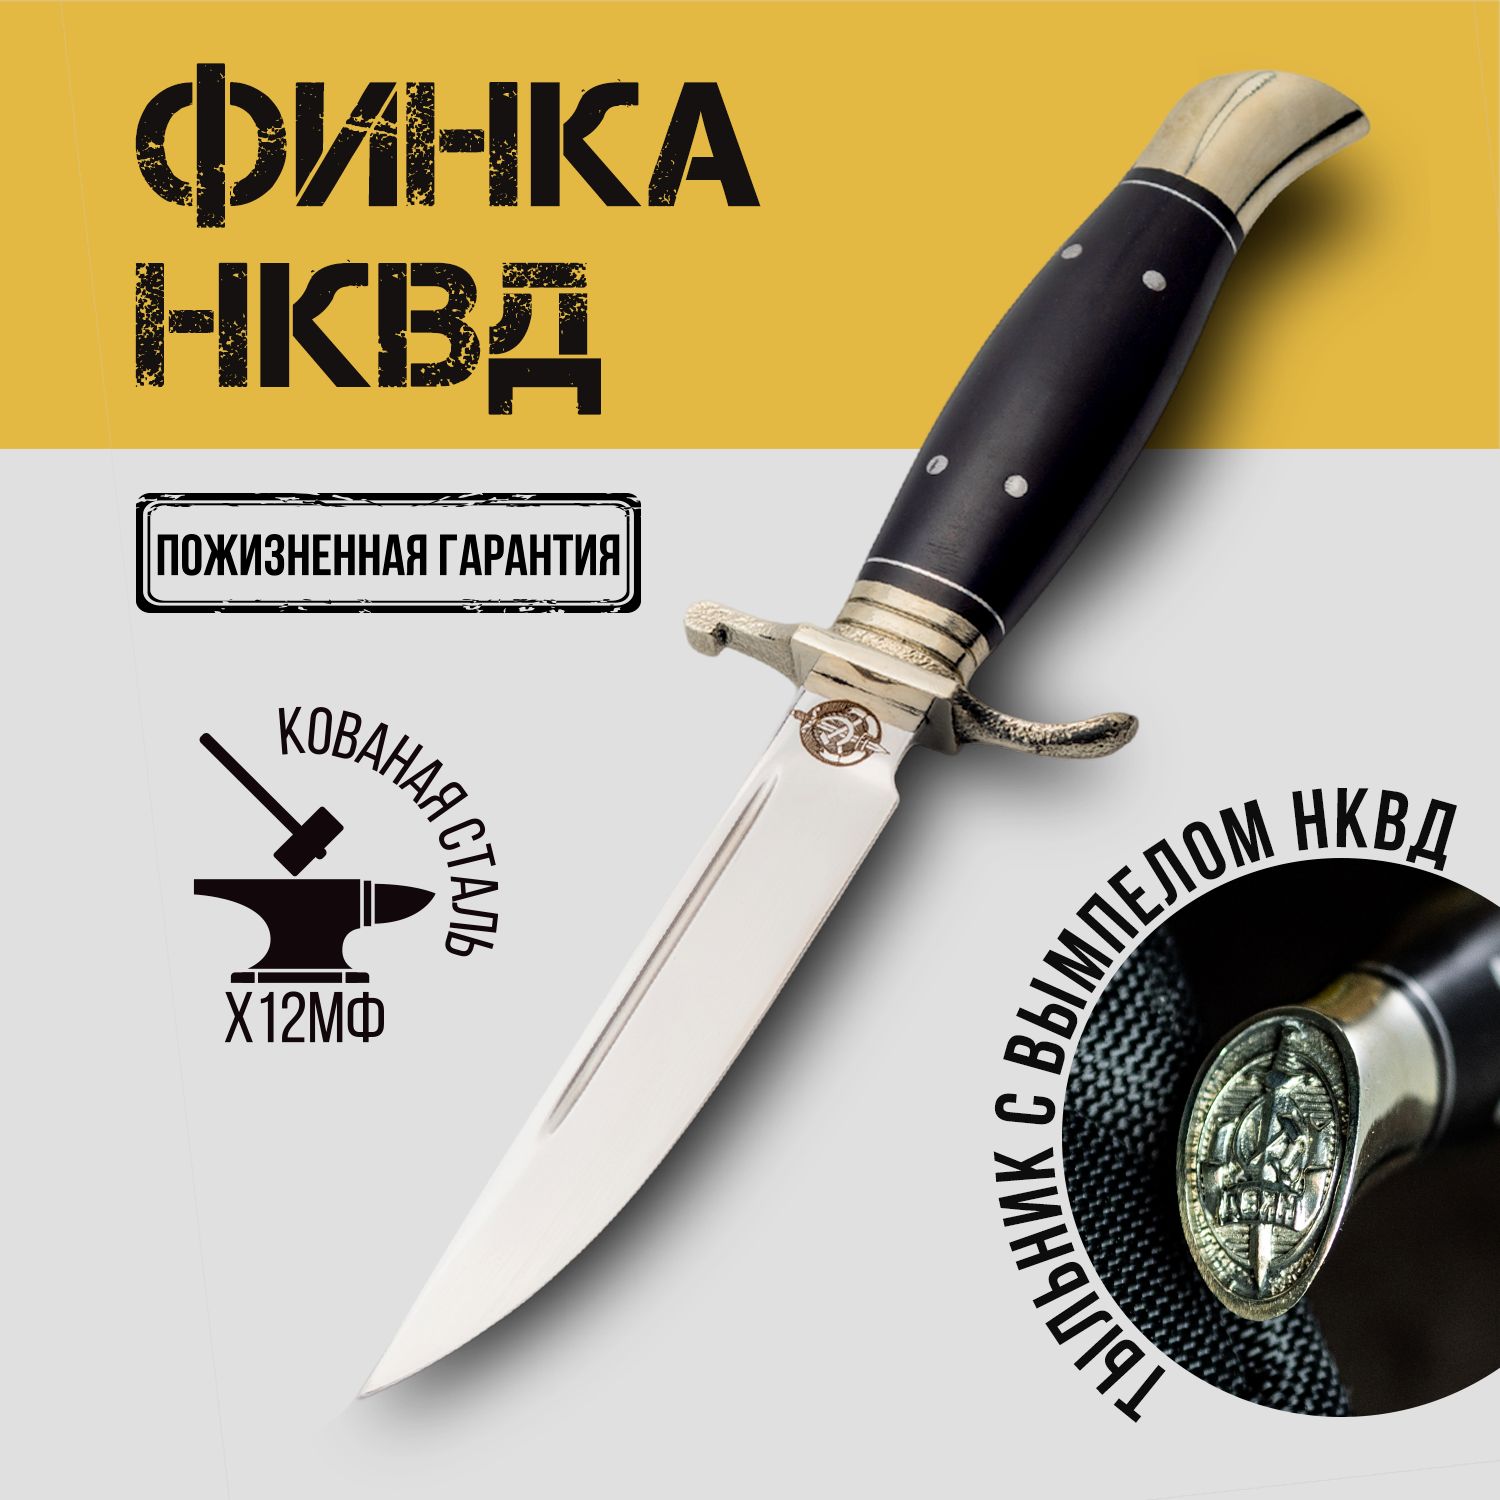 ФинкаНКВДизкованойстали/ножтуристический/походный/х12мф